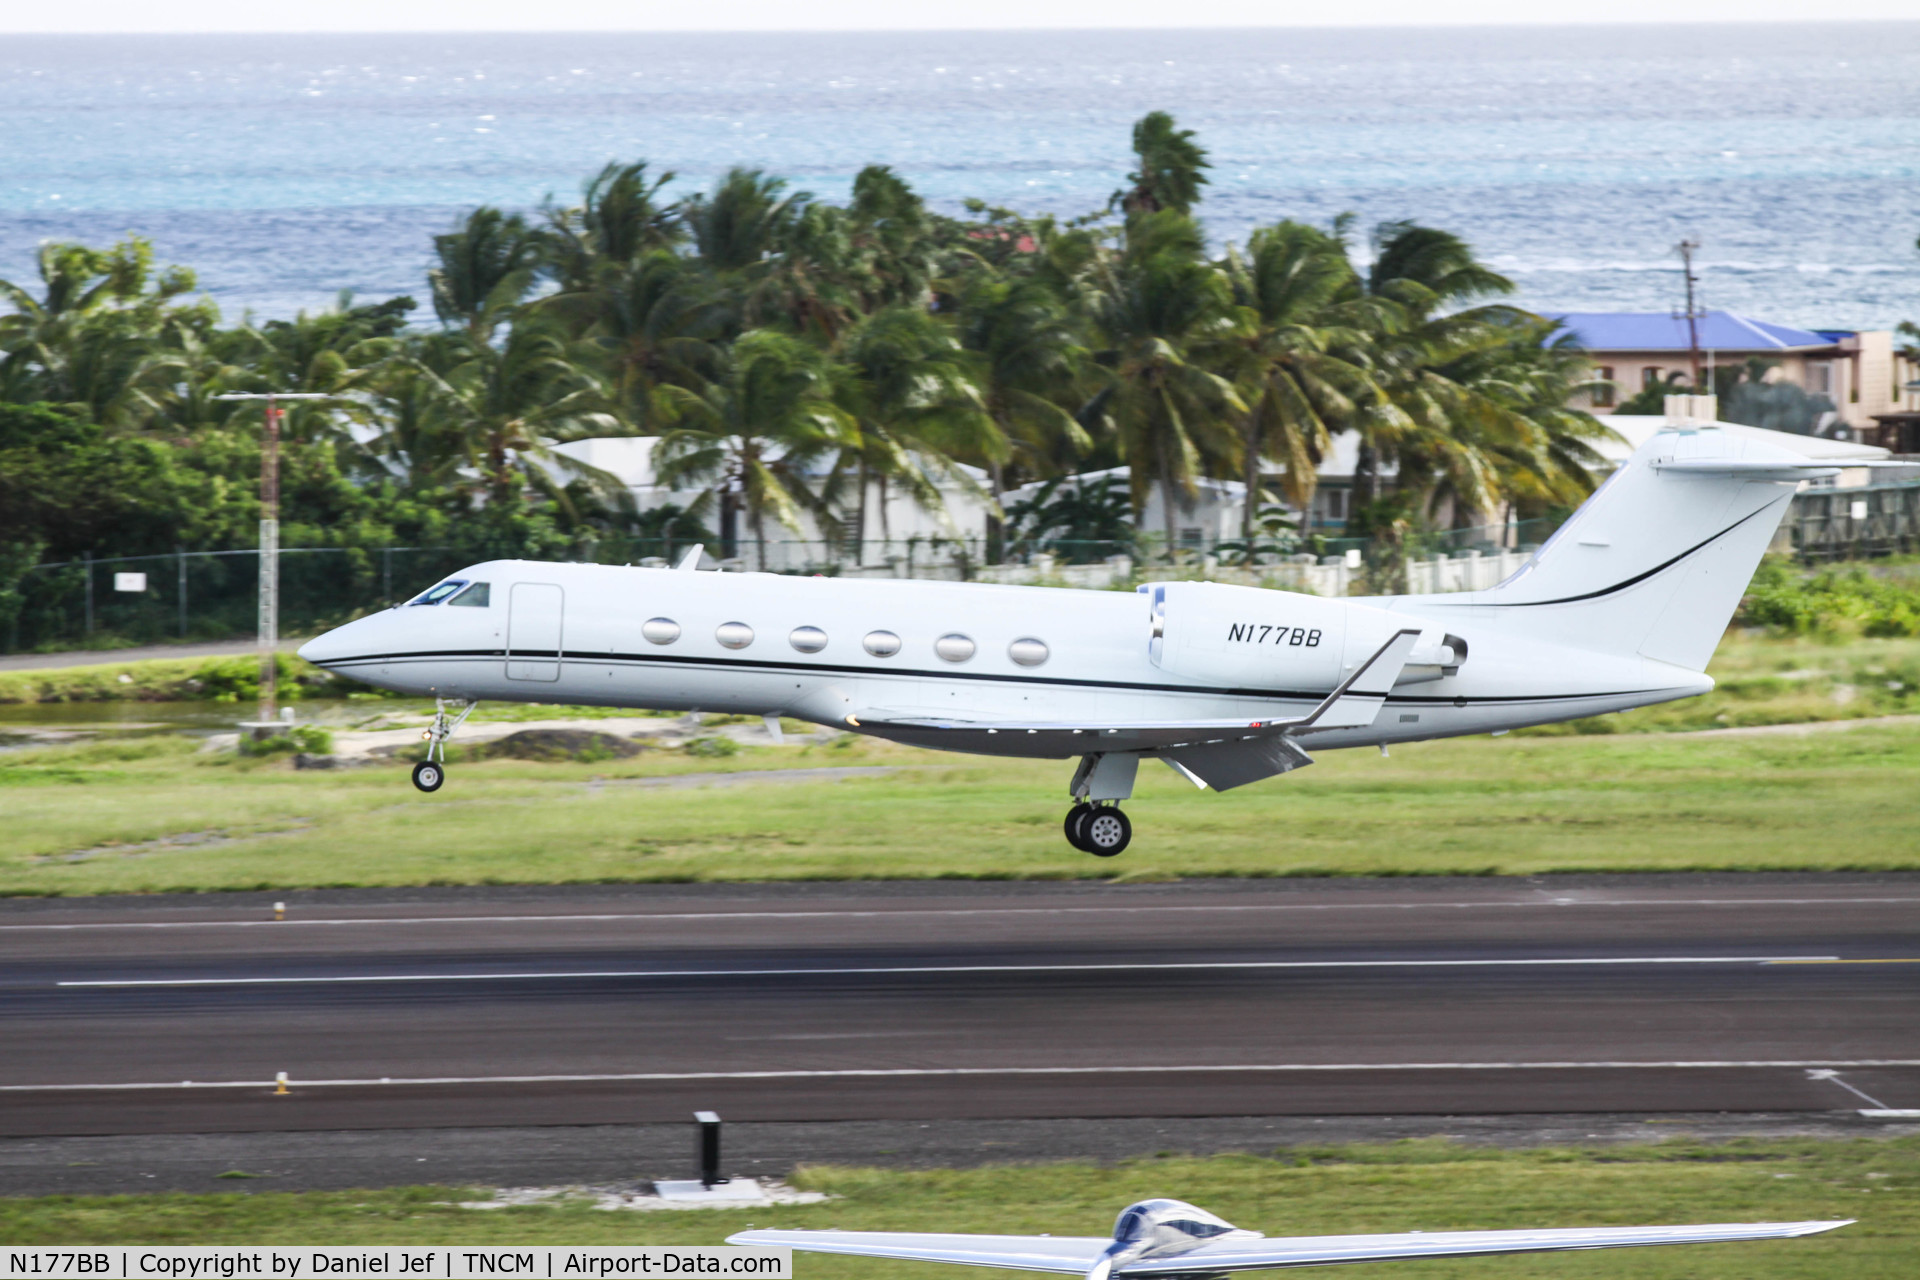 N177BB, 1988 Gulfstream Aerospace G-IV C/N 1073, N177BB